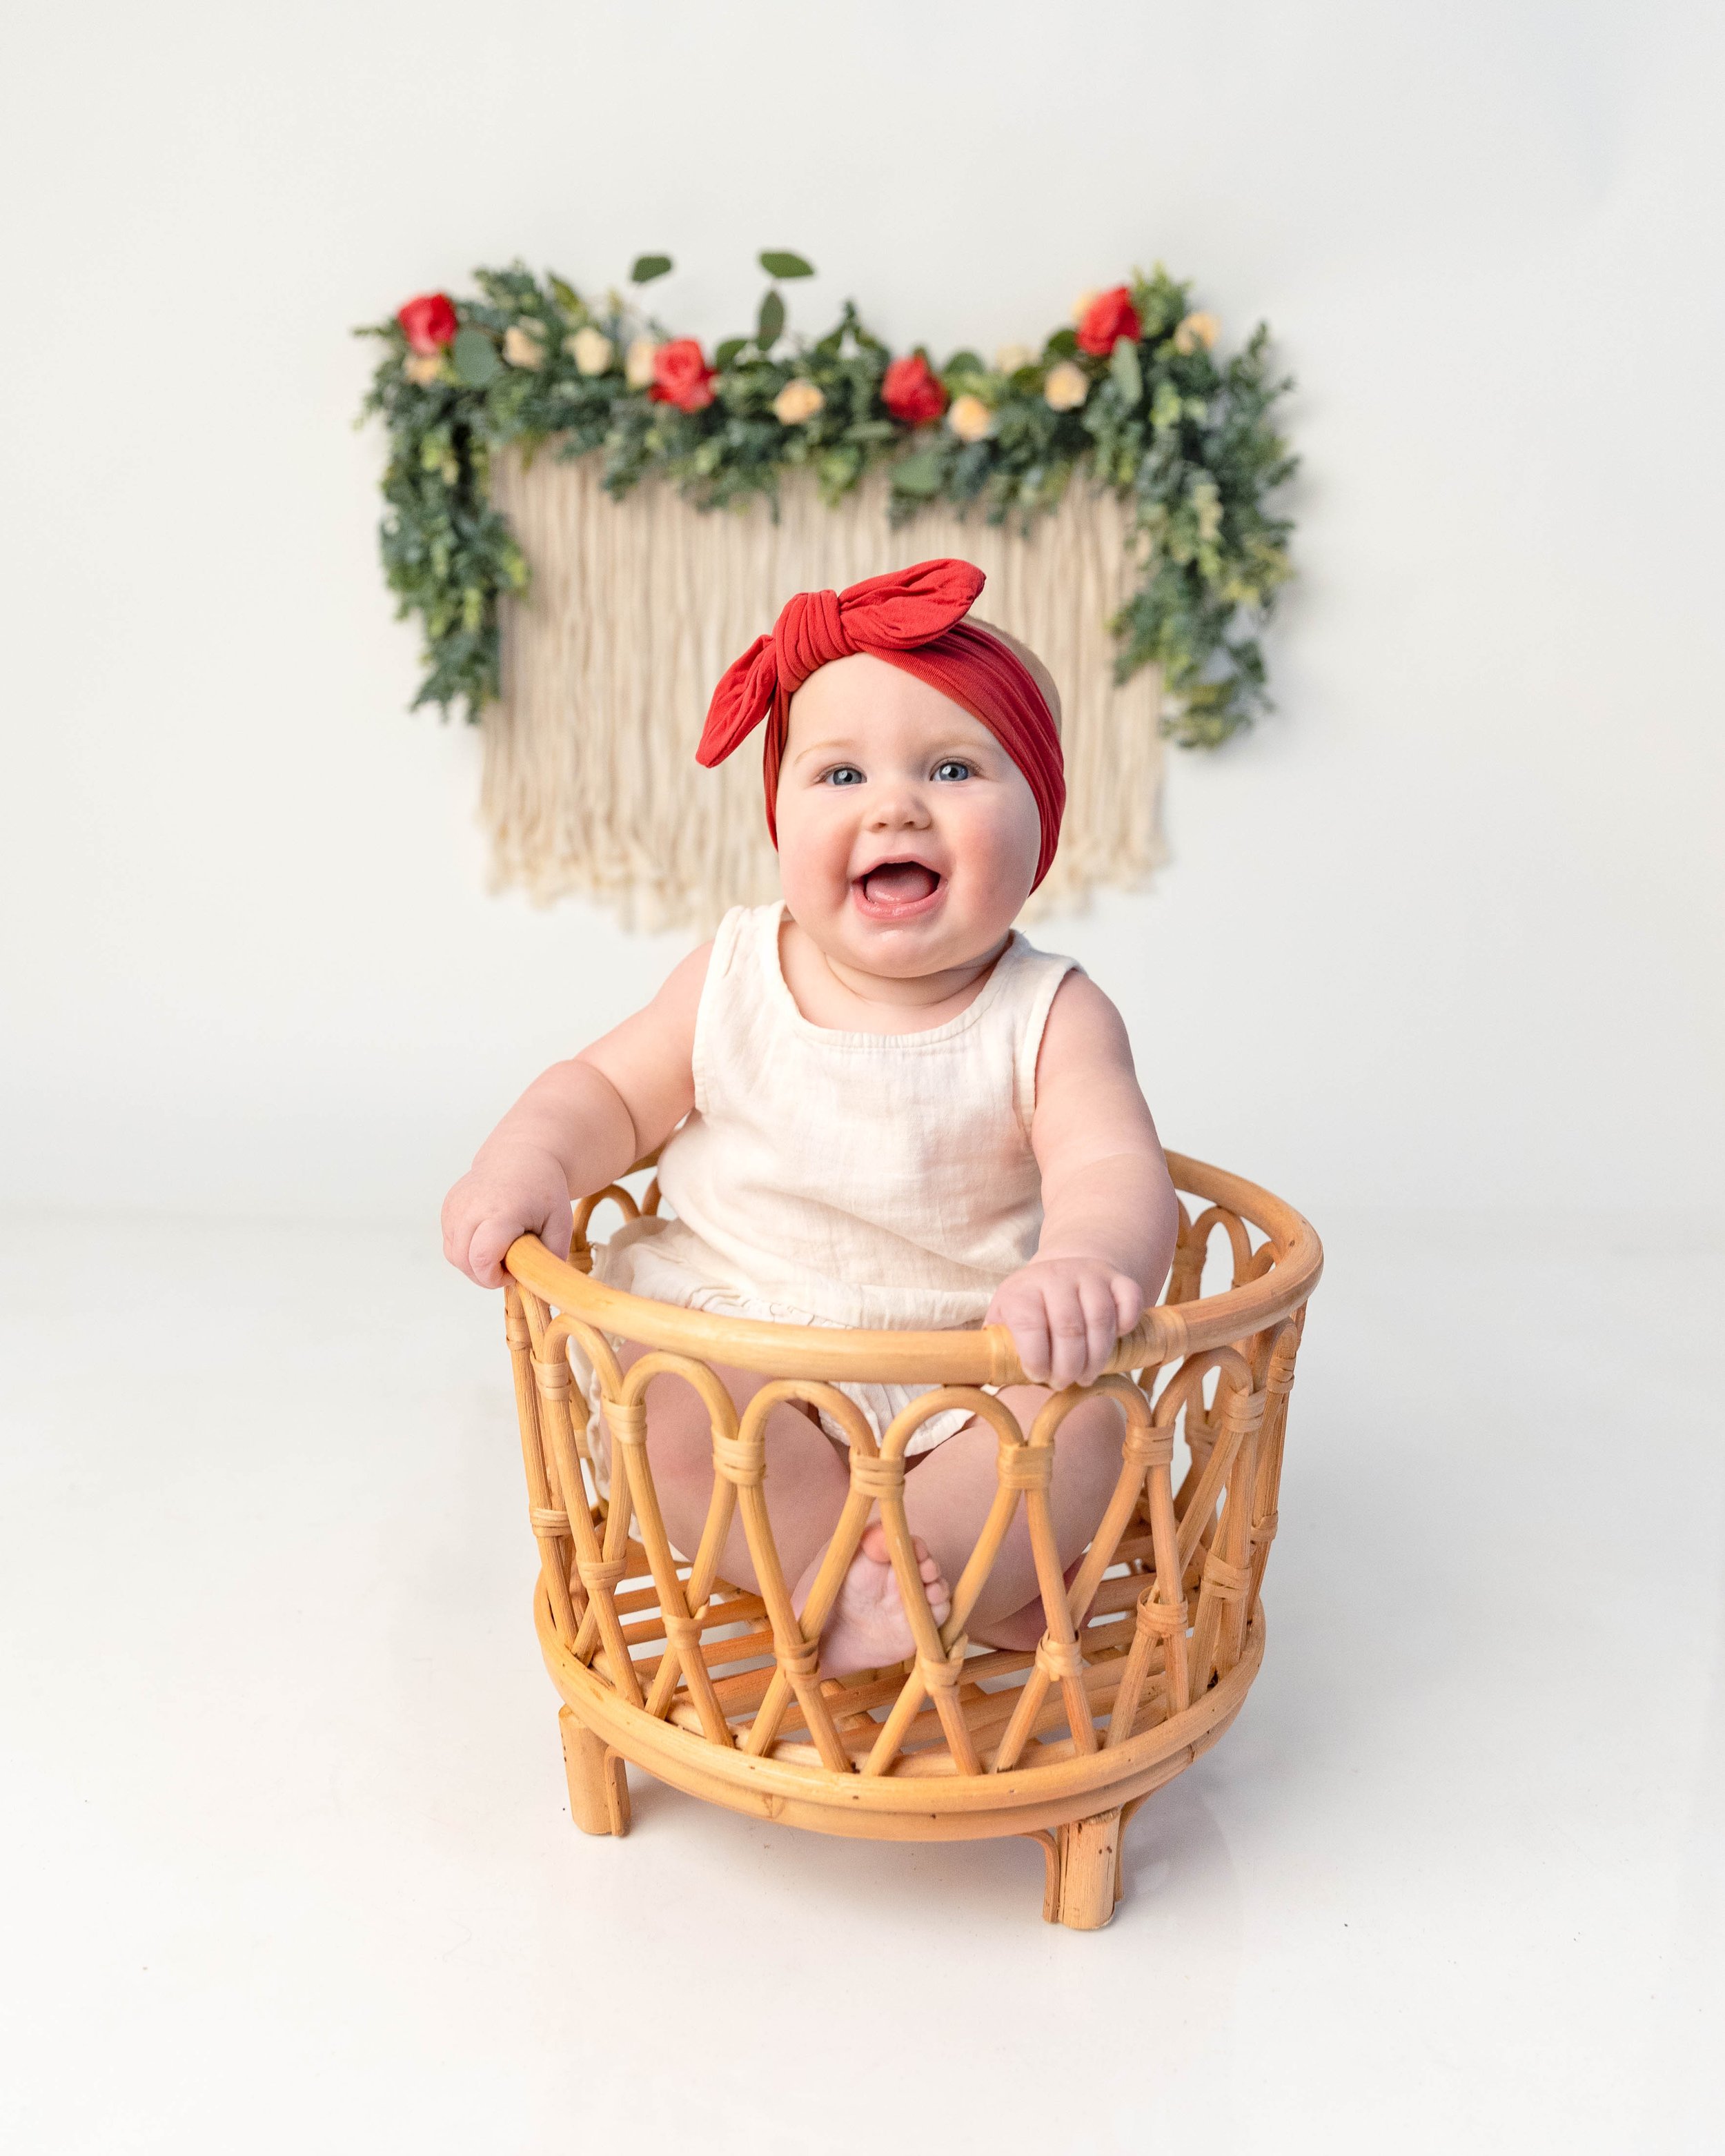 baby-girl-milk-bath-flowers-milestone-photography-newborn-photographer-spokane-washington-6.jpg